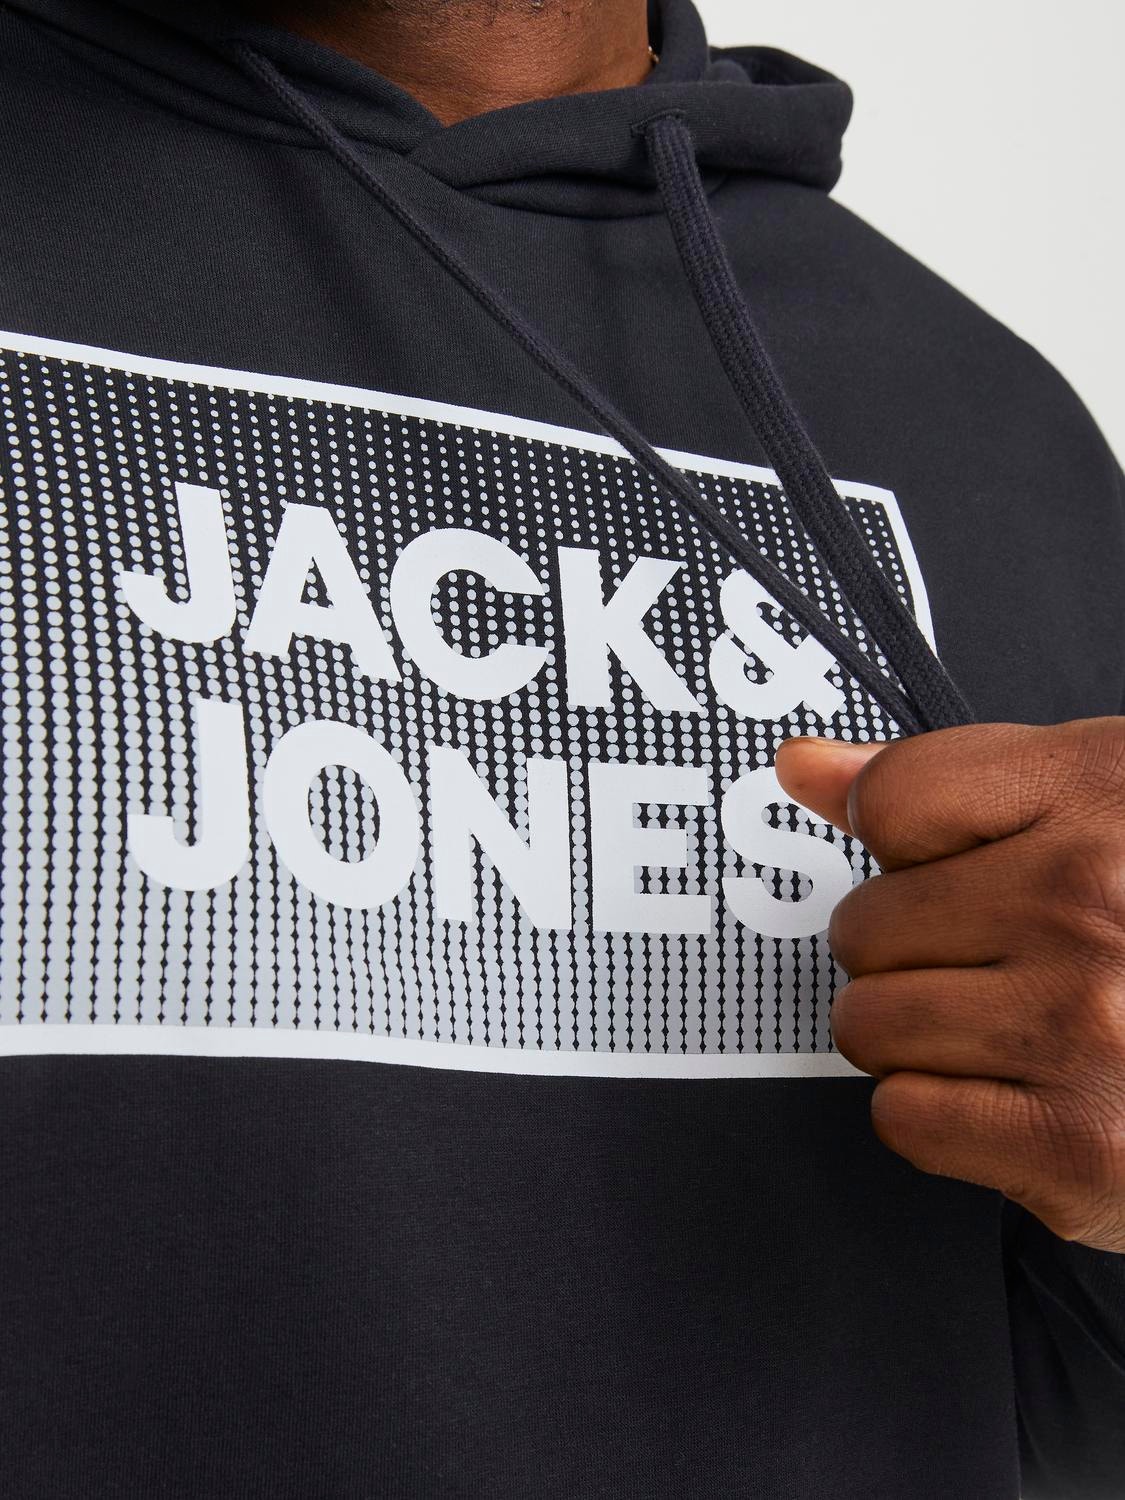 Jack & Jones Plus Size Sudadera con capucha Estampado -Black - 12254867